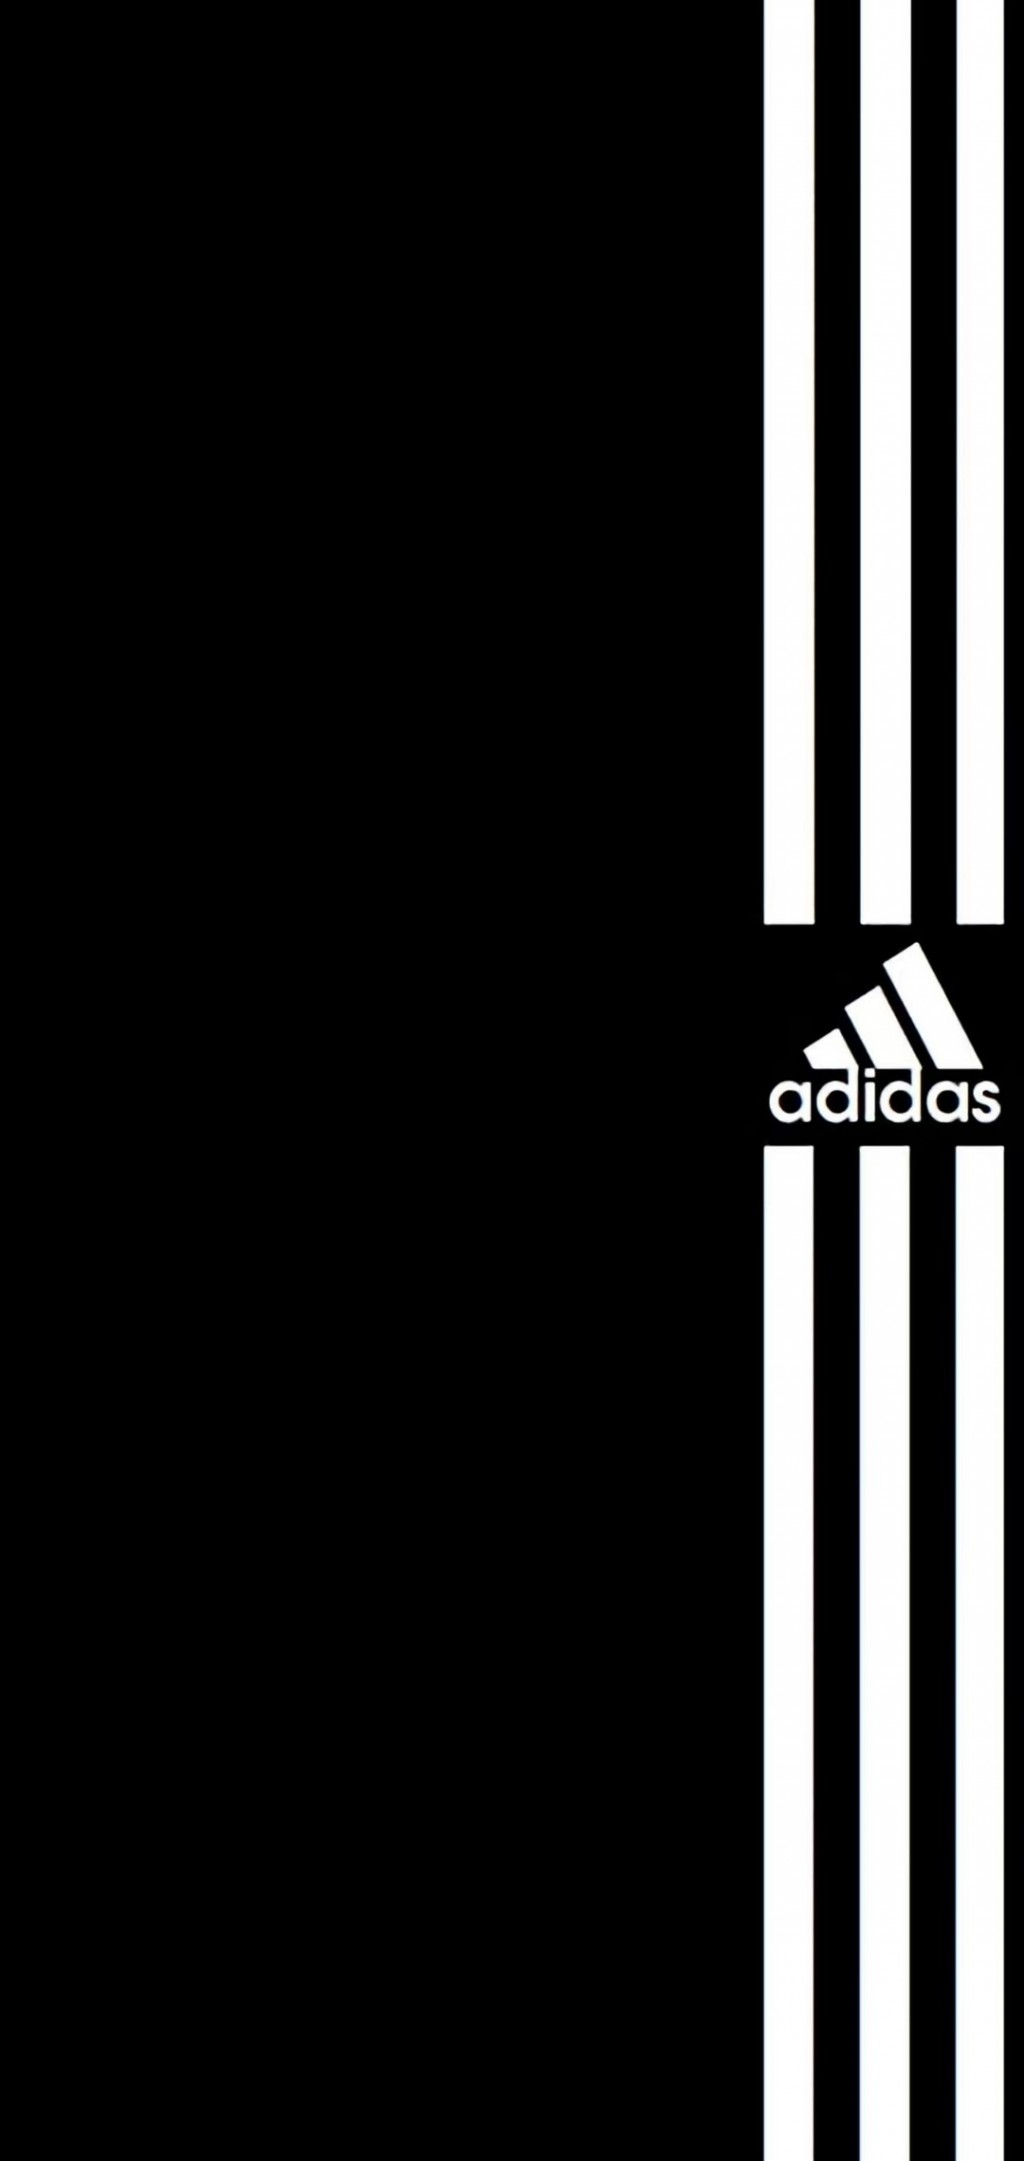 阿迪达斯adidas品牌logo手机壁纸